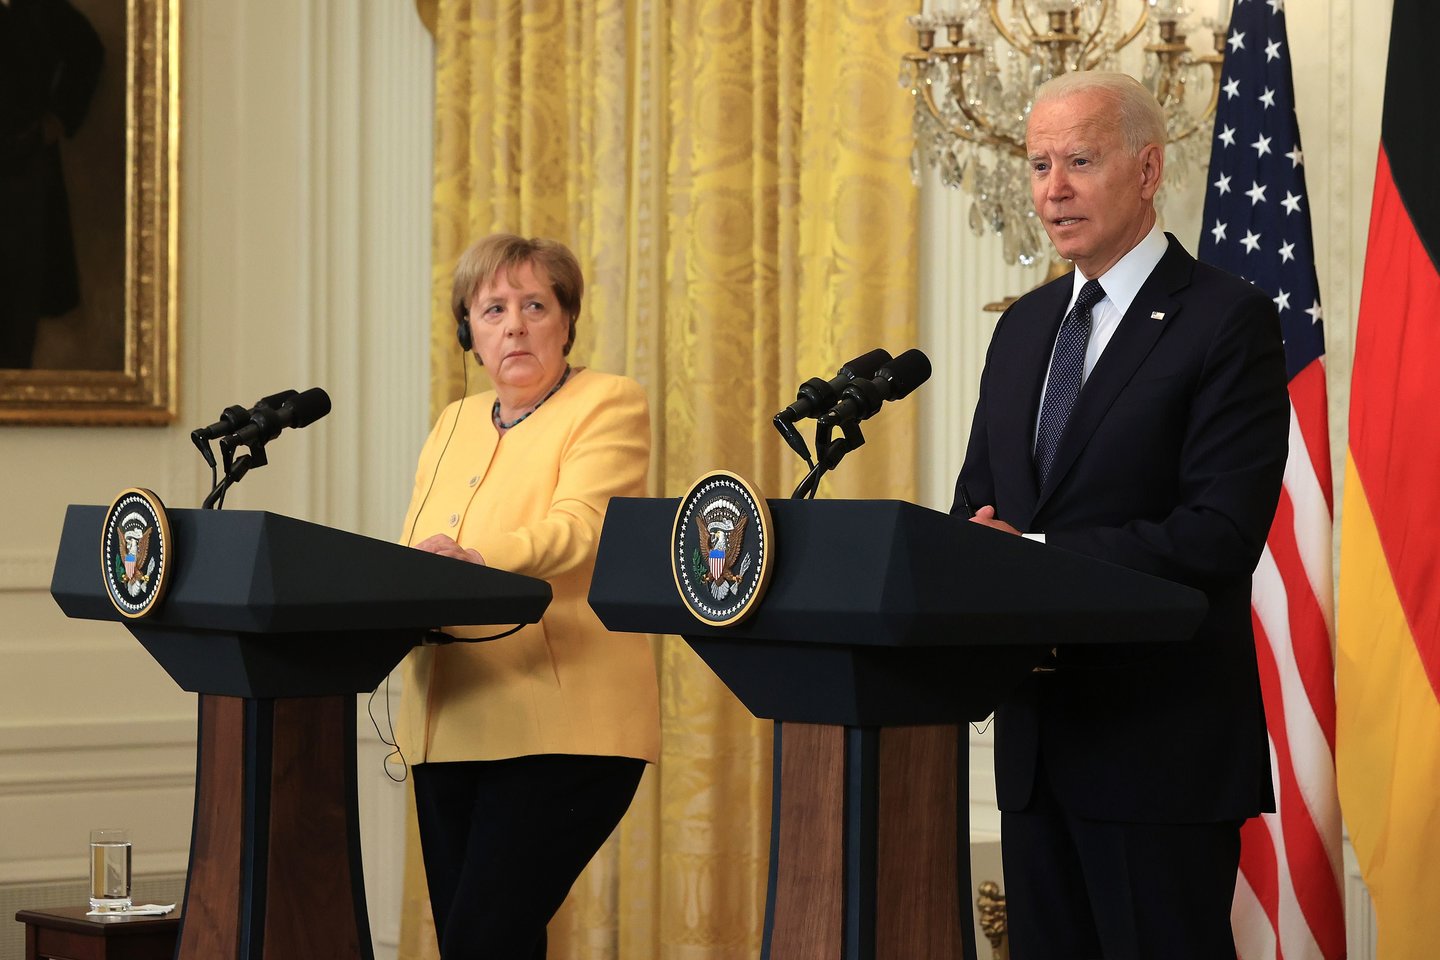  J. Bidenas ir A. Merkel: ne visais klausimais sutariantys draugai.  <br> AFP/Scanpix nuotr.